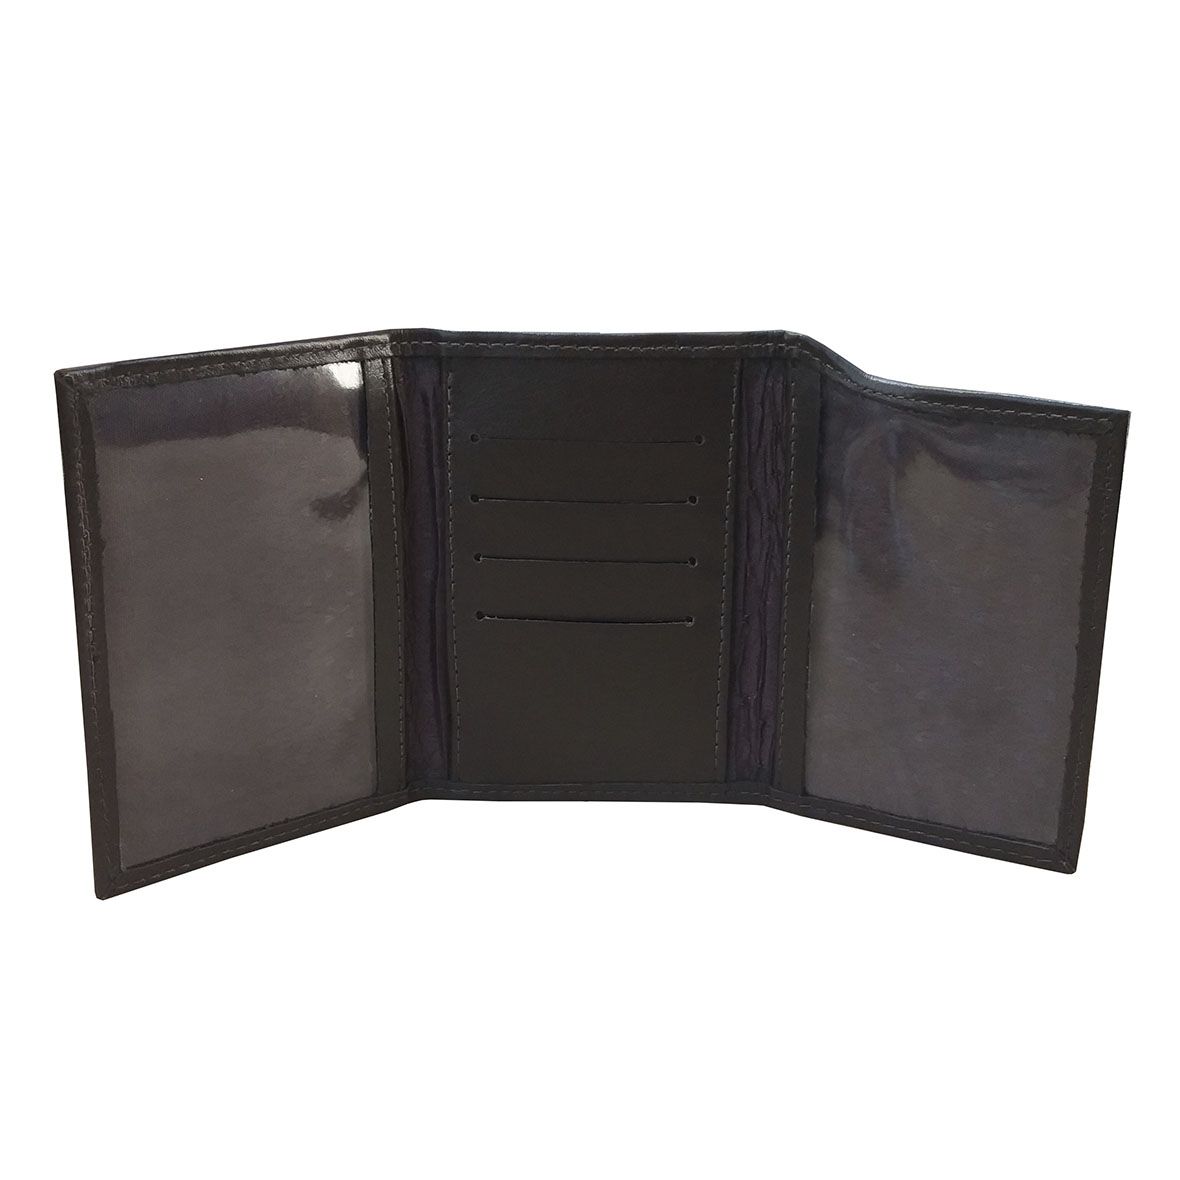 Mini Carteira 01 - Carteira Unissex de Bolso em Couro (385TN01) Porta Cartão, Dinheiro, Documento de Veículo, CRLV, CNH, RG